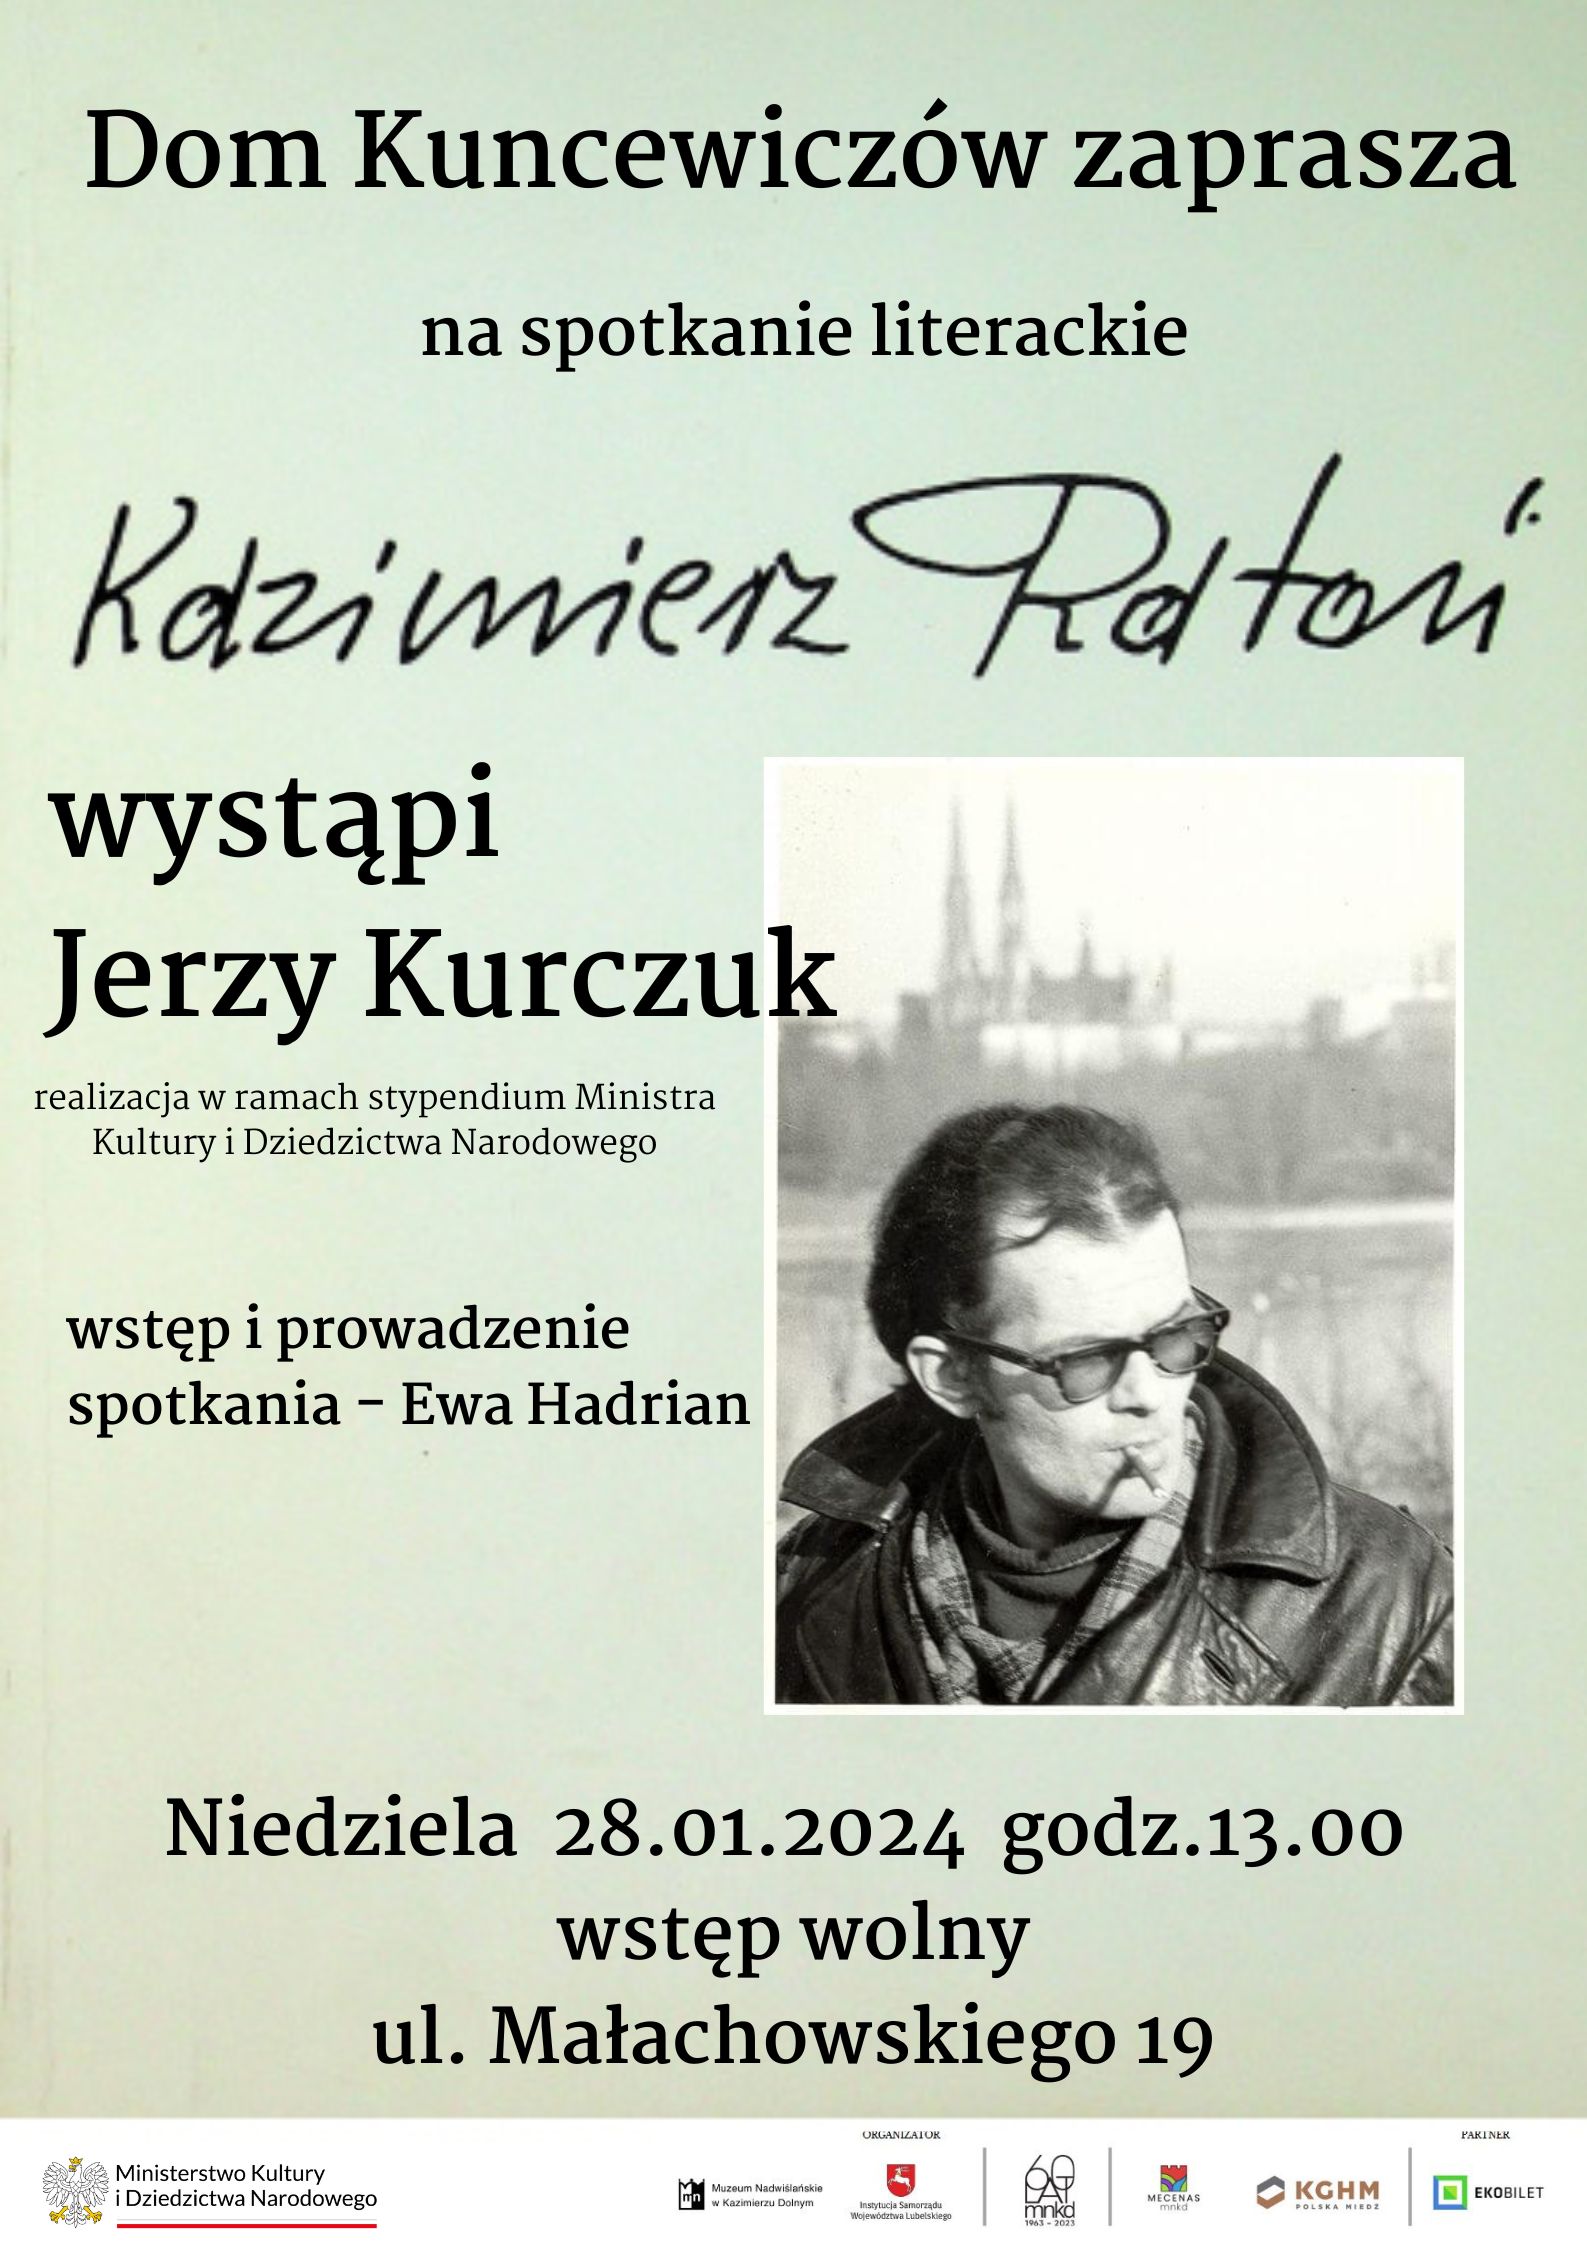 Spotkanie – „Kazimierz Ratoń – poeta śmierci” | Dom Kuncewiczów – 28 stycznia o godz. 13.00 (wstęp wolny)